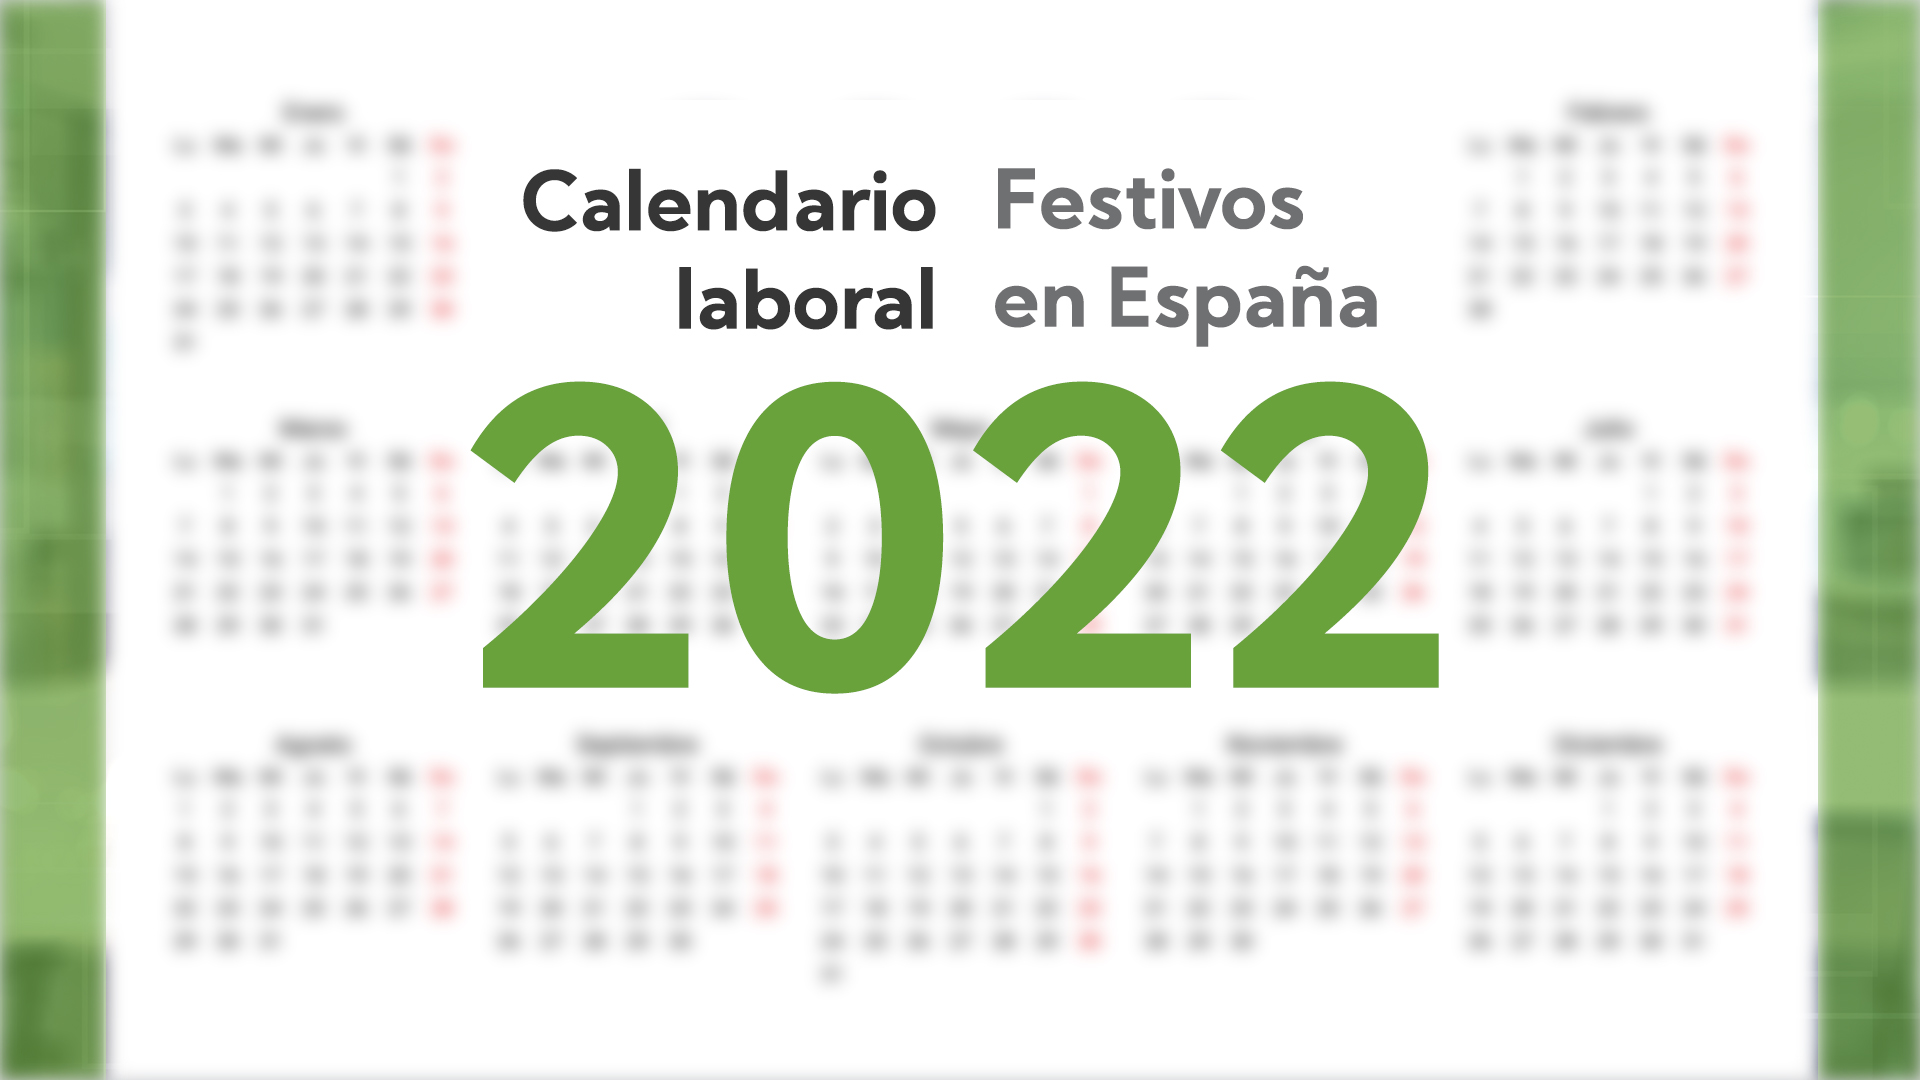 El Calendario Laboral De 2022 En España Control Laboral